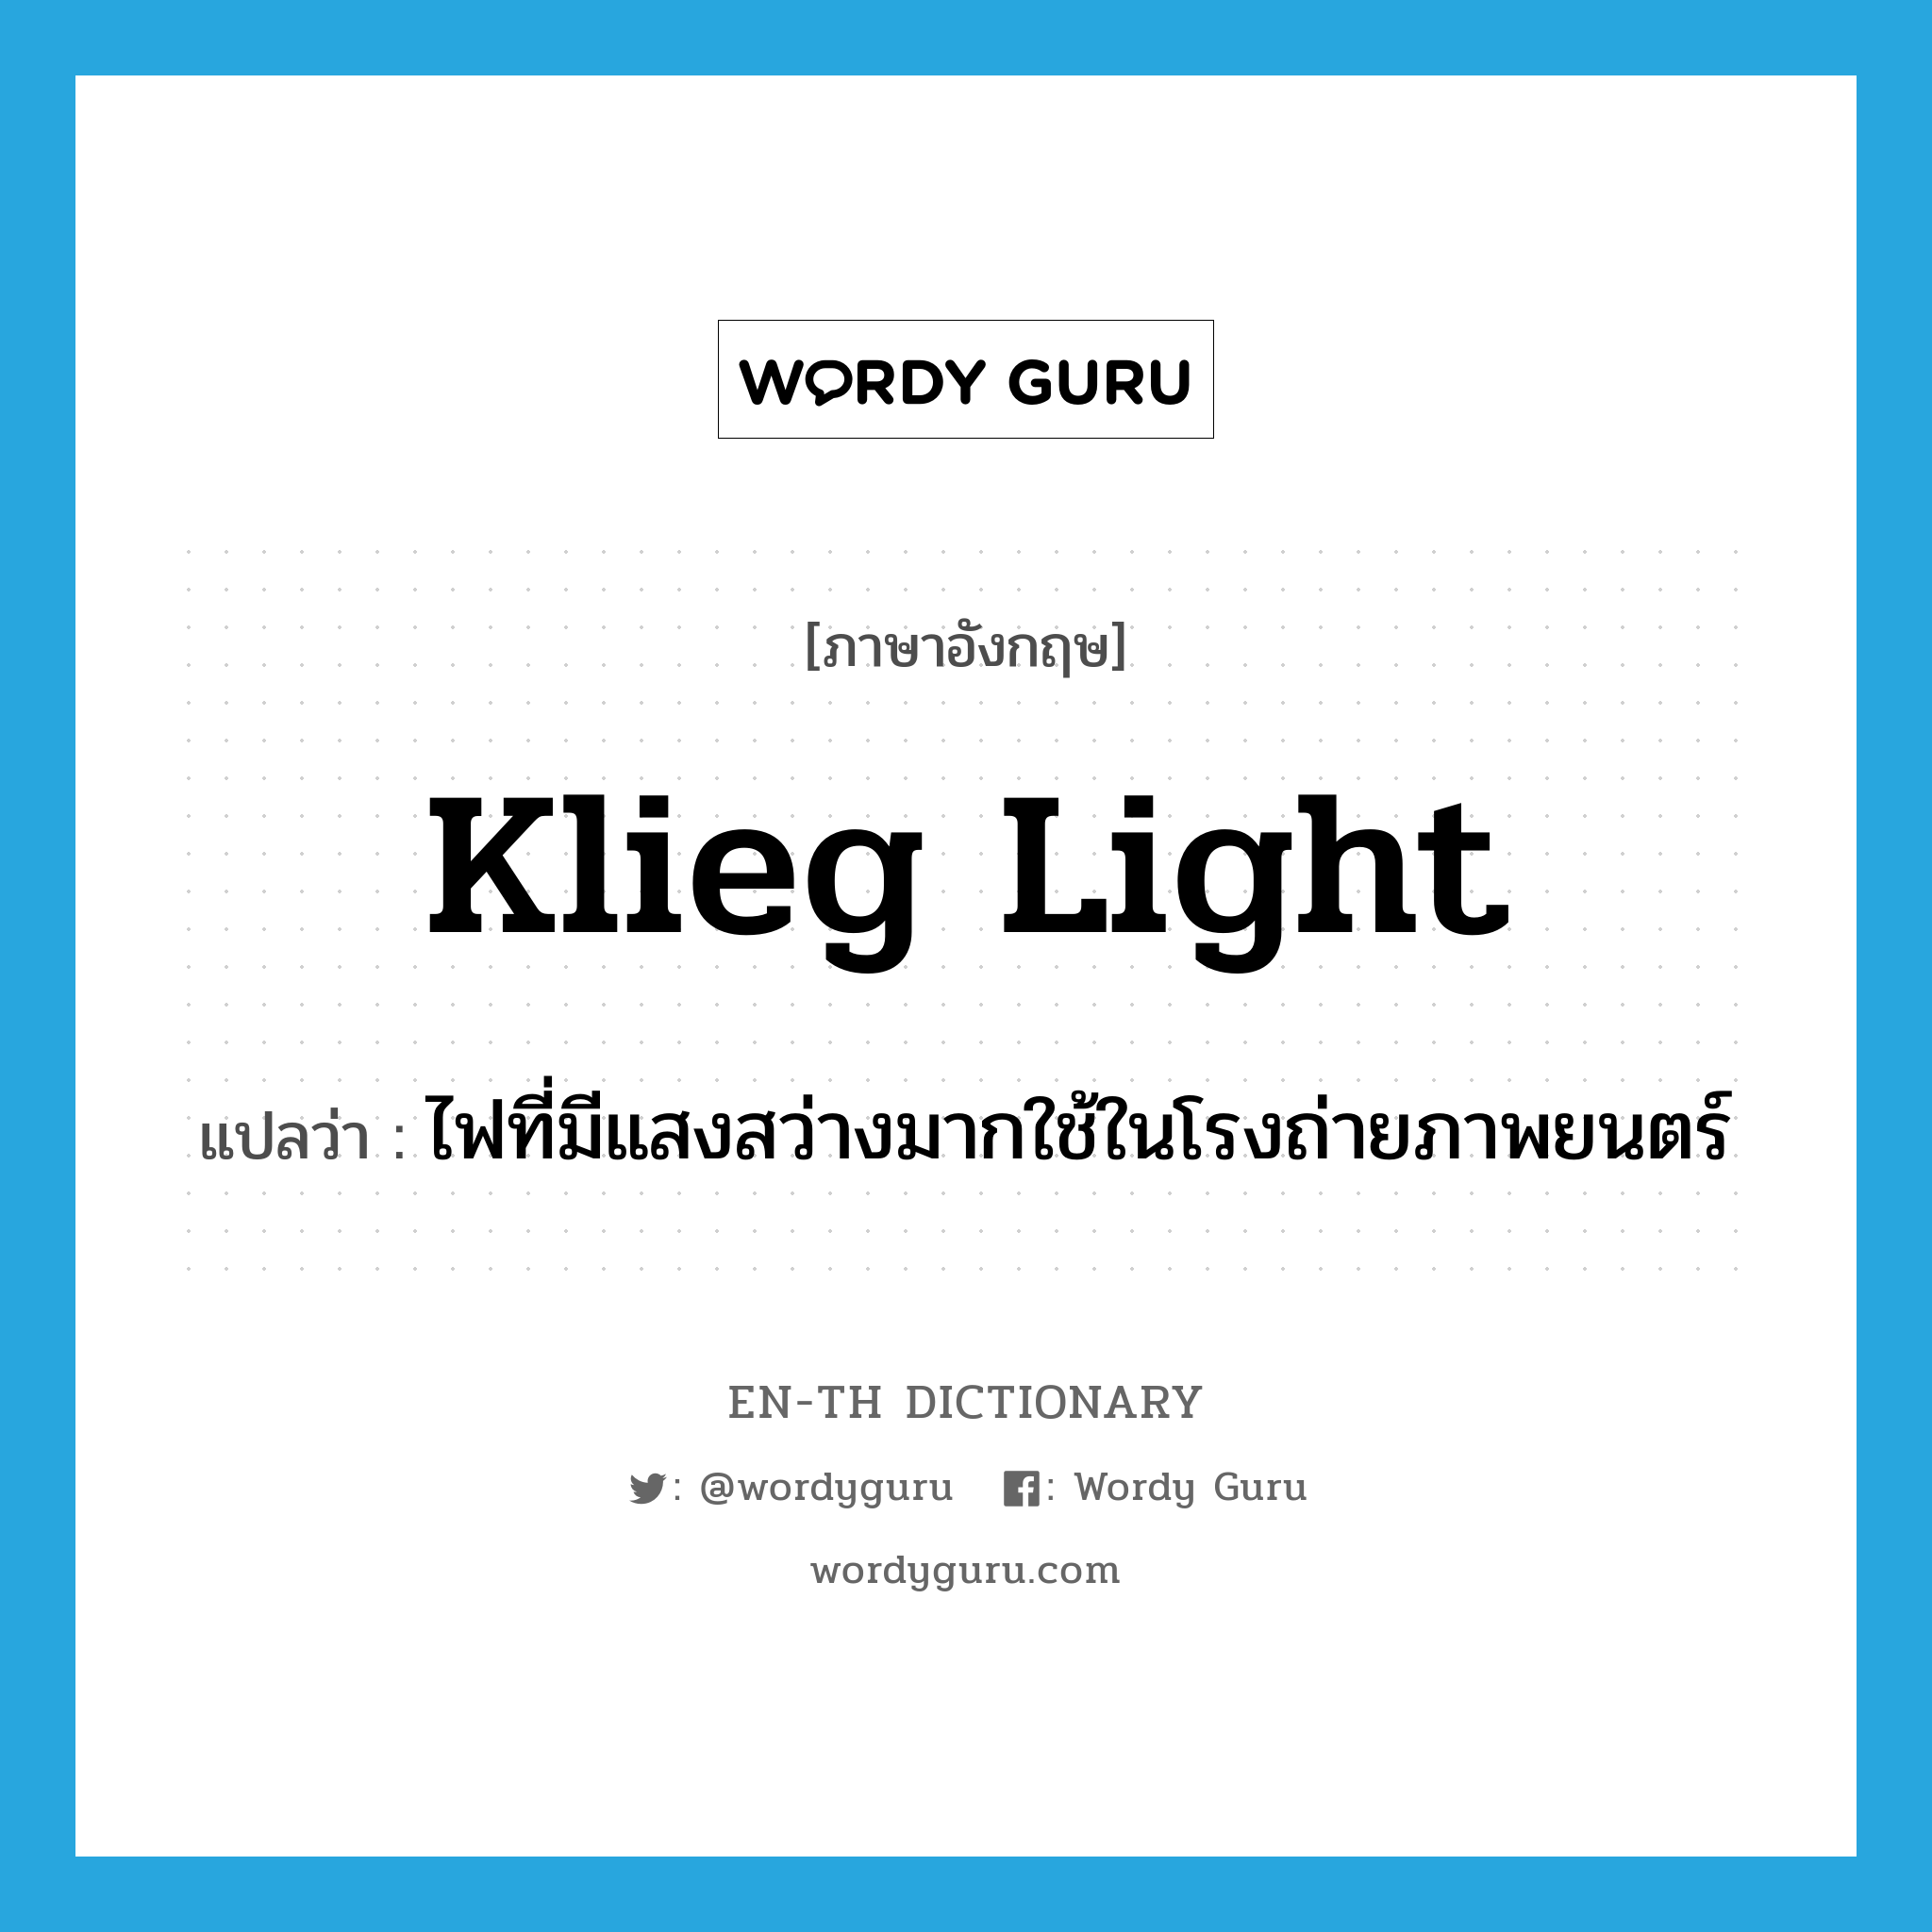 klieg light แปลว่า?, คำศัพท์ภาษาอังกฤษ klieg light แปลว่า ไฟที่มีแสงสว่างมากใช้ในโรงถ่ายภาพยนตร์ ประเภท N หมวด N